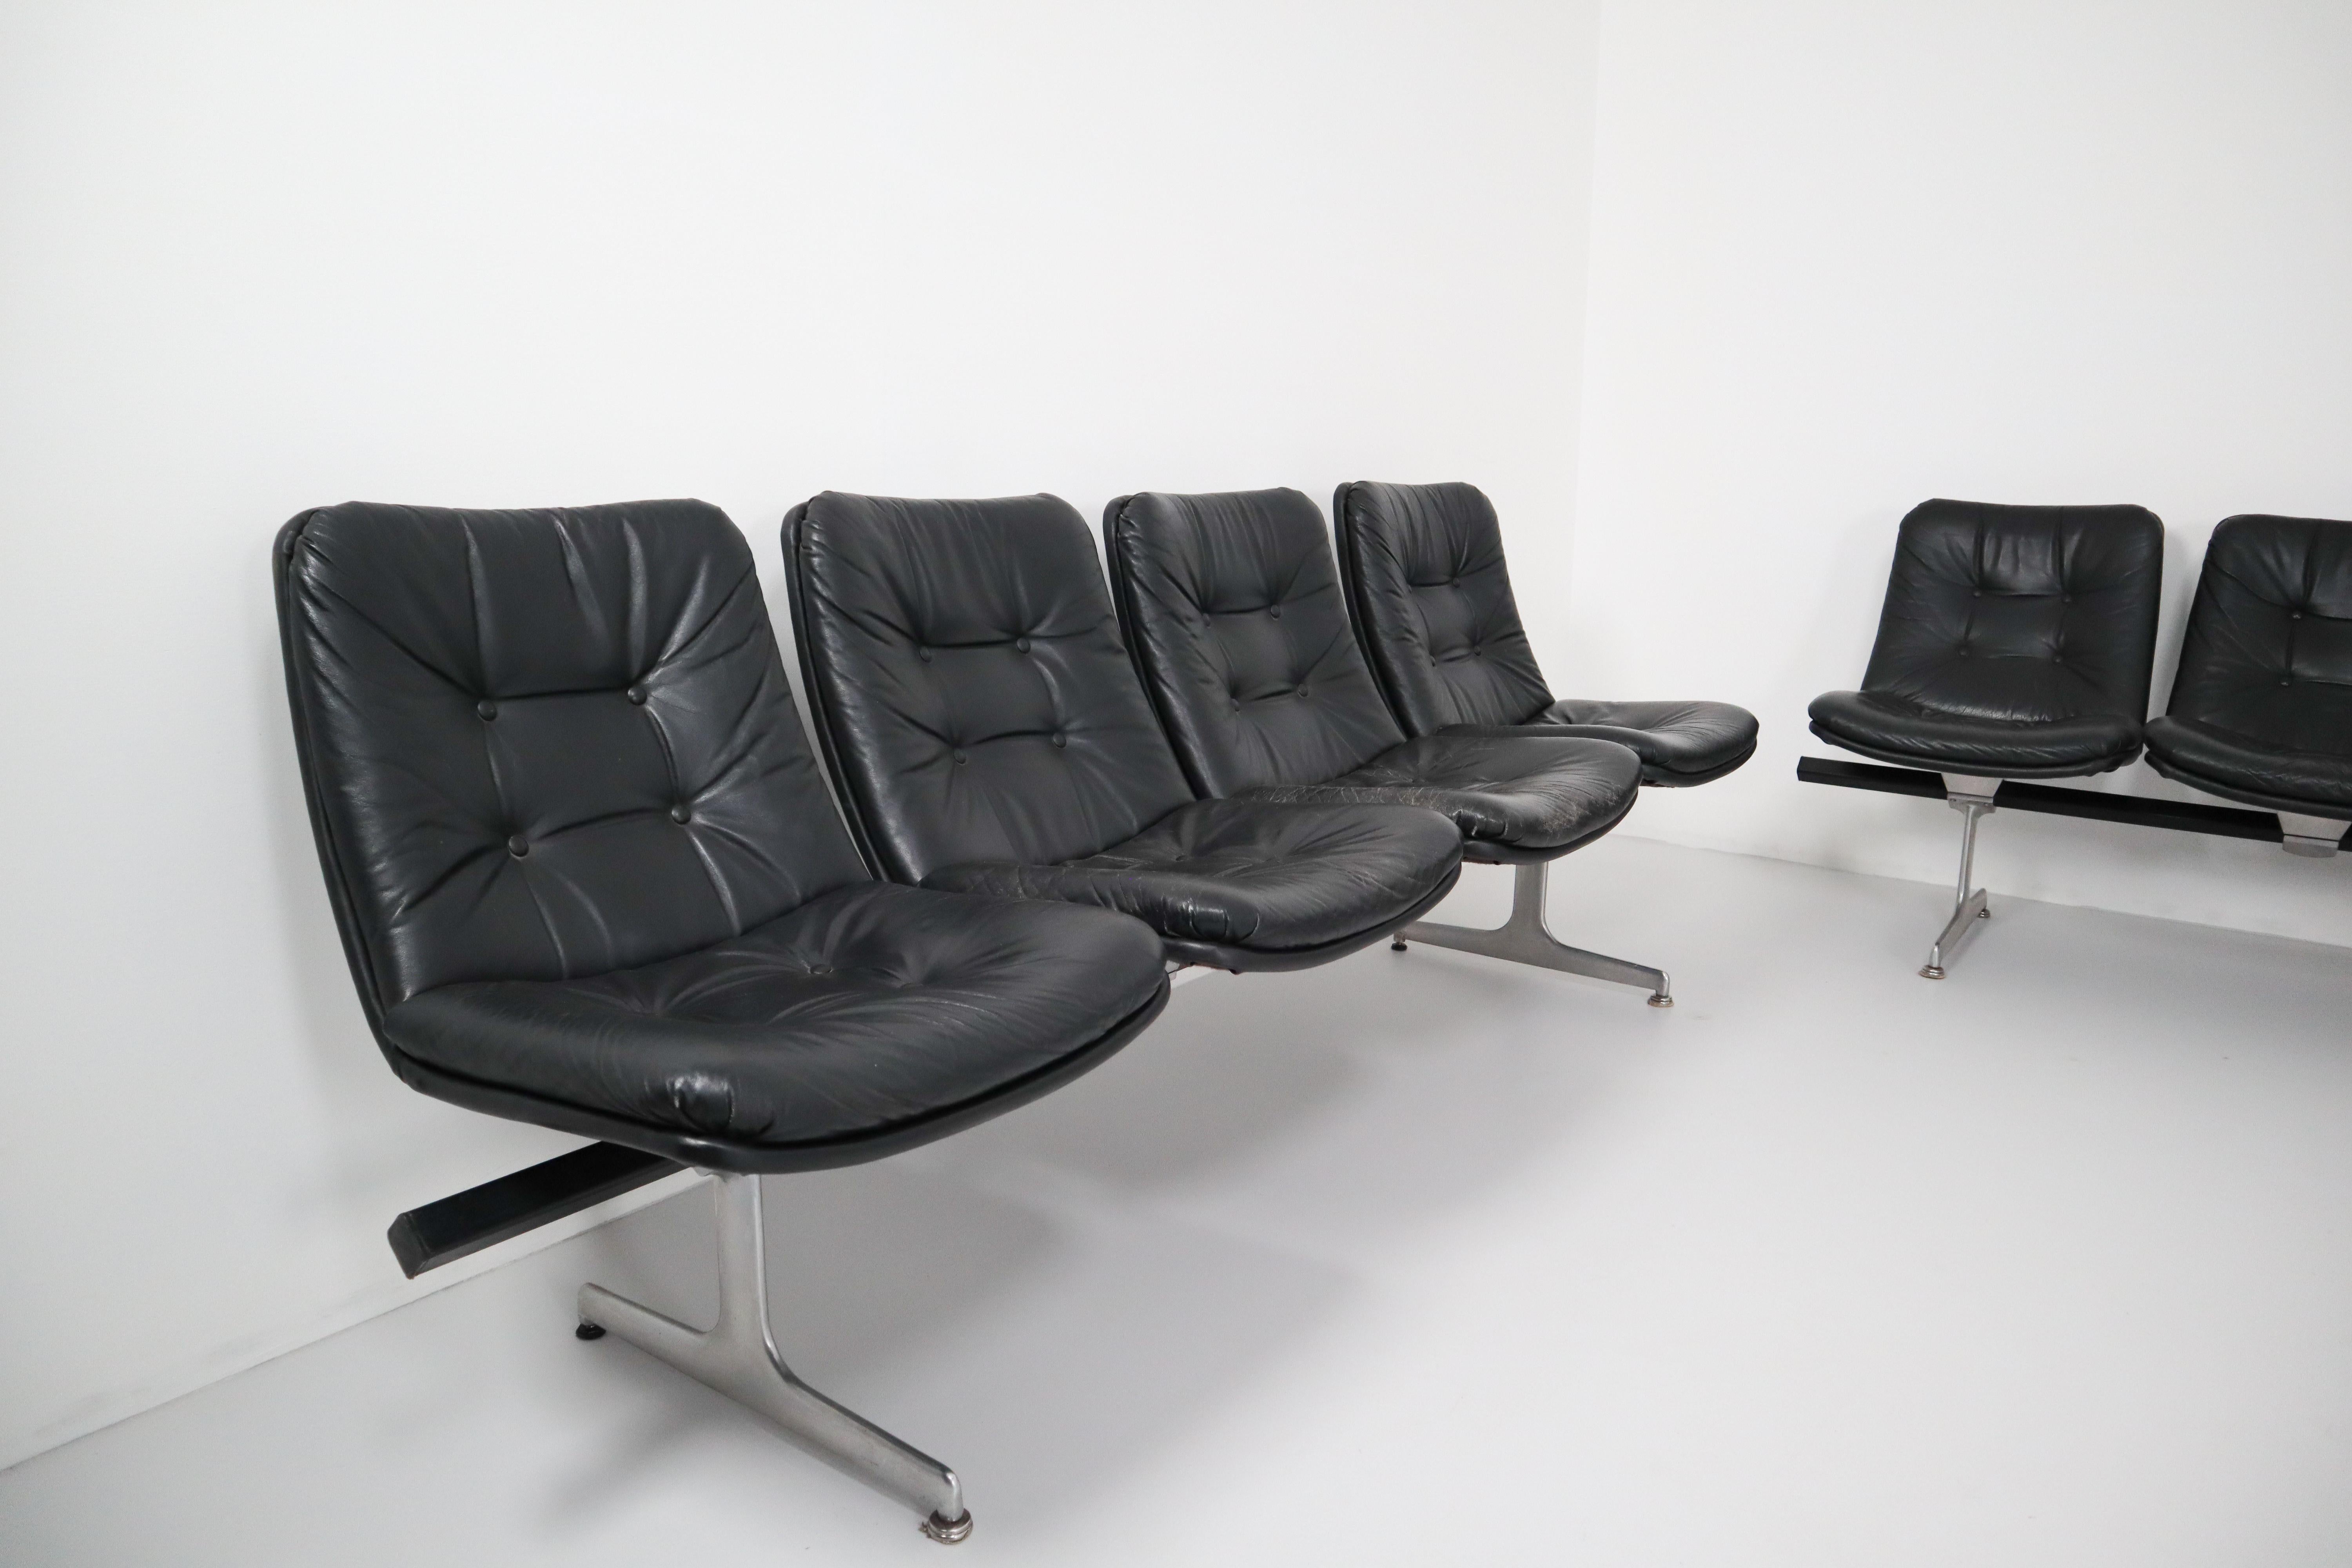 Geoffrey Harcourt Waiting Room Multiple Seating System für Artifort, 1960er Jahre (20. Jahrhundert)